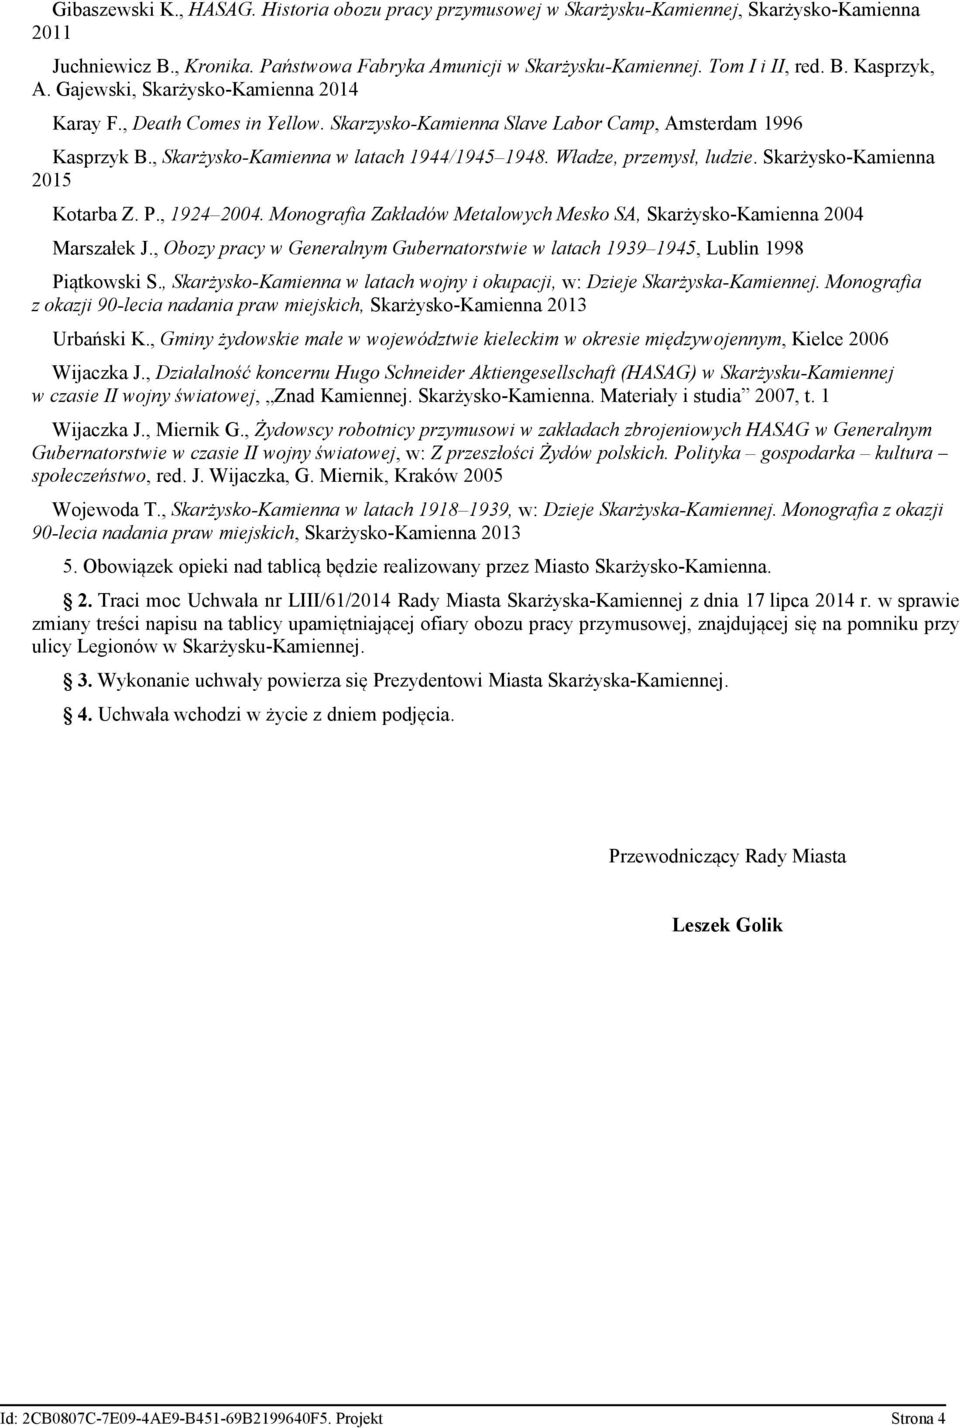 Władze, przemysł, ludzie. Skarżysko-Kamienna 2015 Kotarba Z. P., 1924 2004. Monografia Zakładów Metalowych Mesko SA, Skarżysko-Kamienna 2004 Marszałek J.